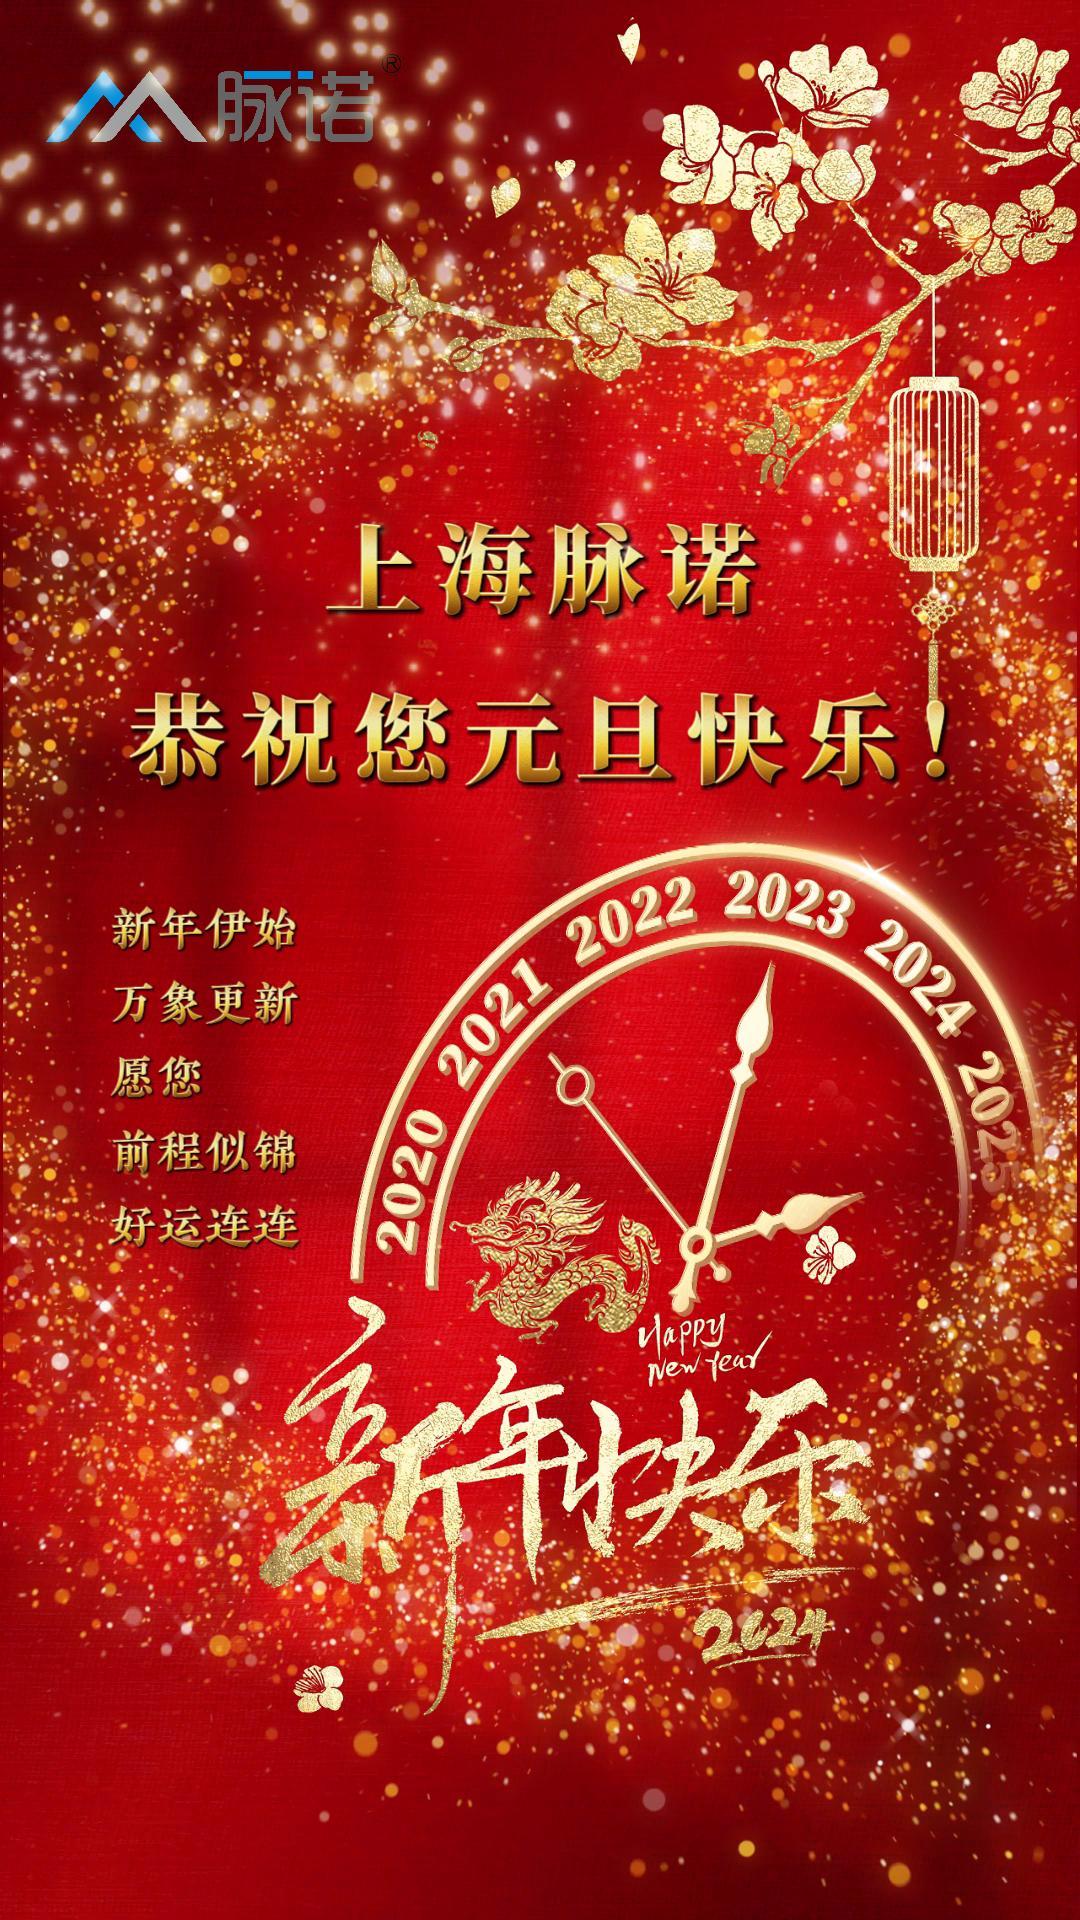 上海脉诺全体员工恭祝大家元旦快乐！